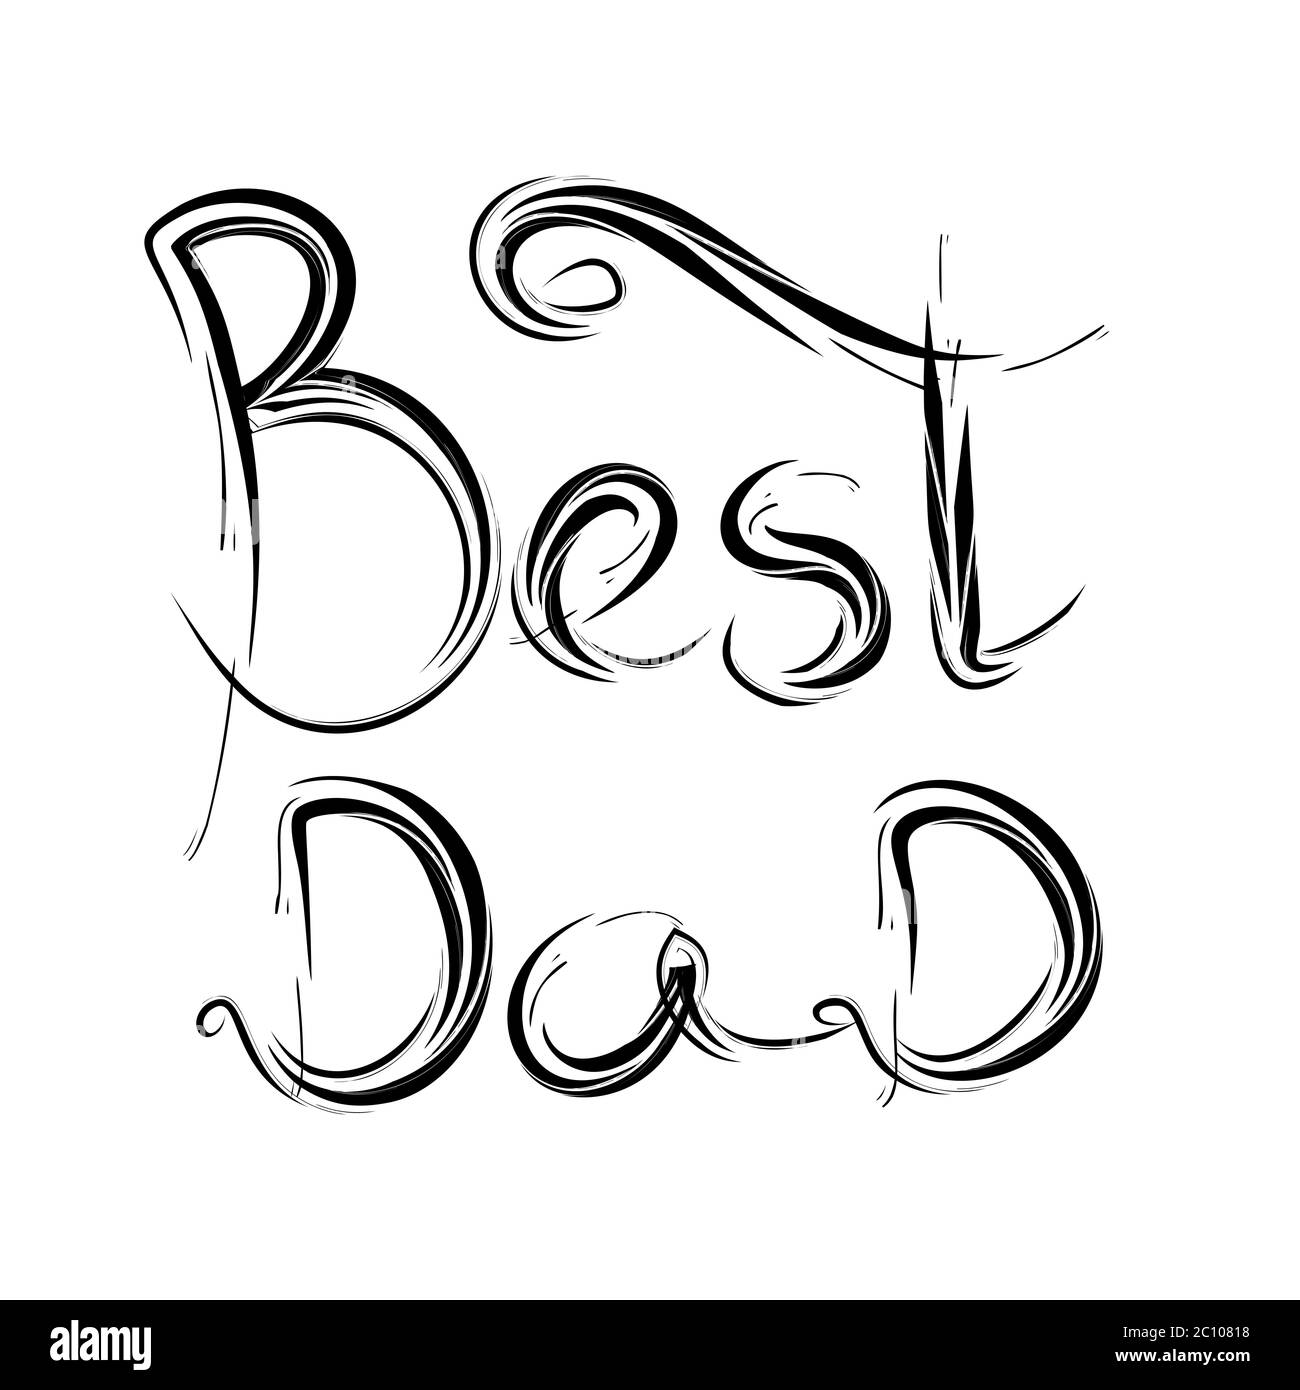 Beste Papa. handgeschriebene Schrift, T-shirt-print-Design, typografische Komposition isoliert auf weißem Hintergrund. Stockfoto